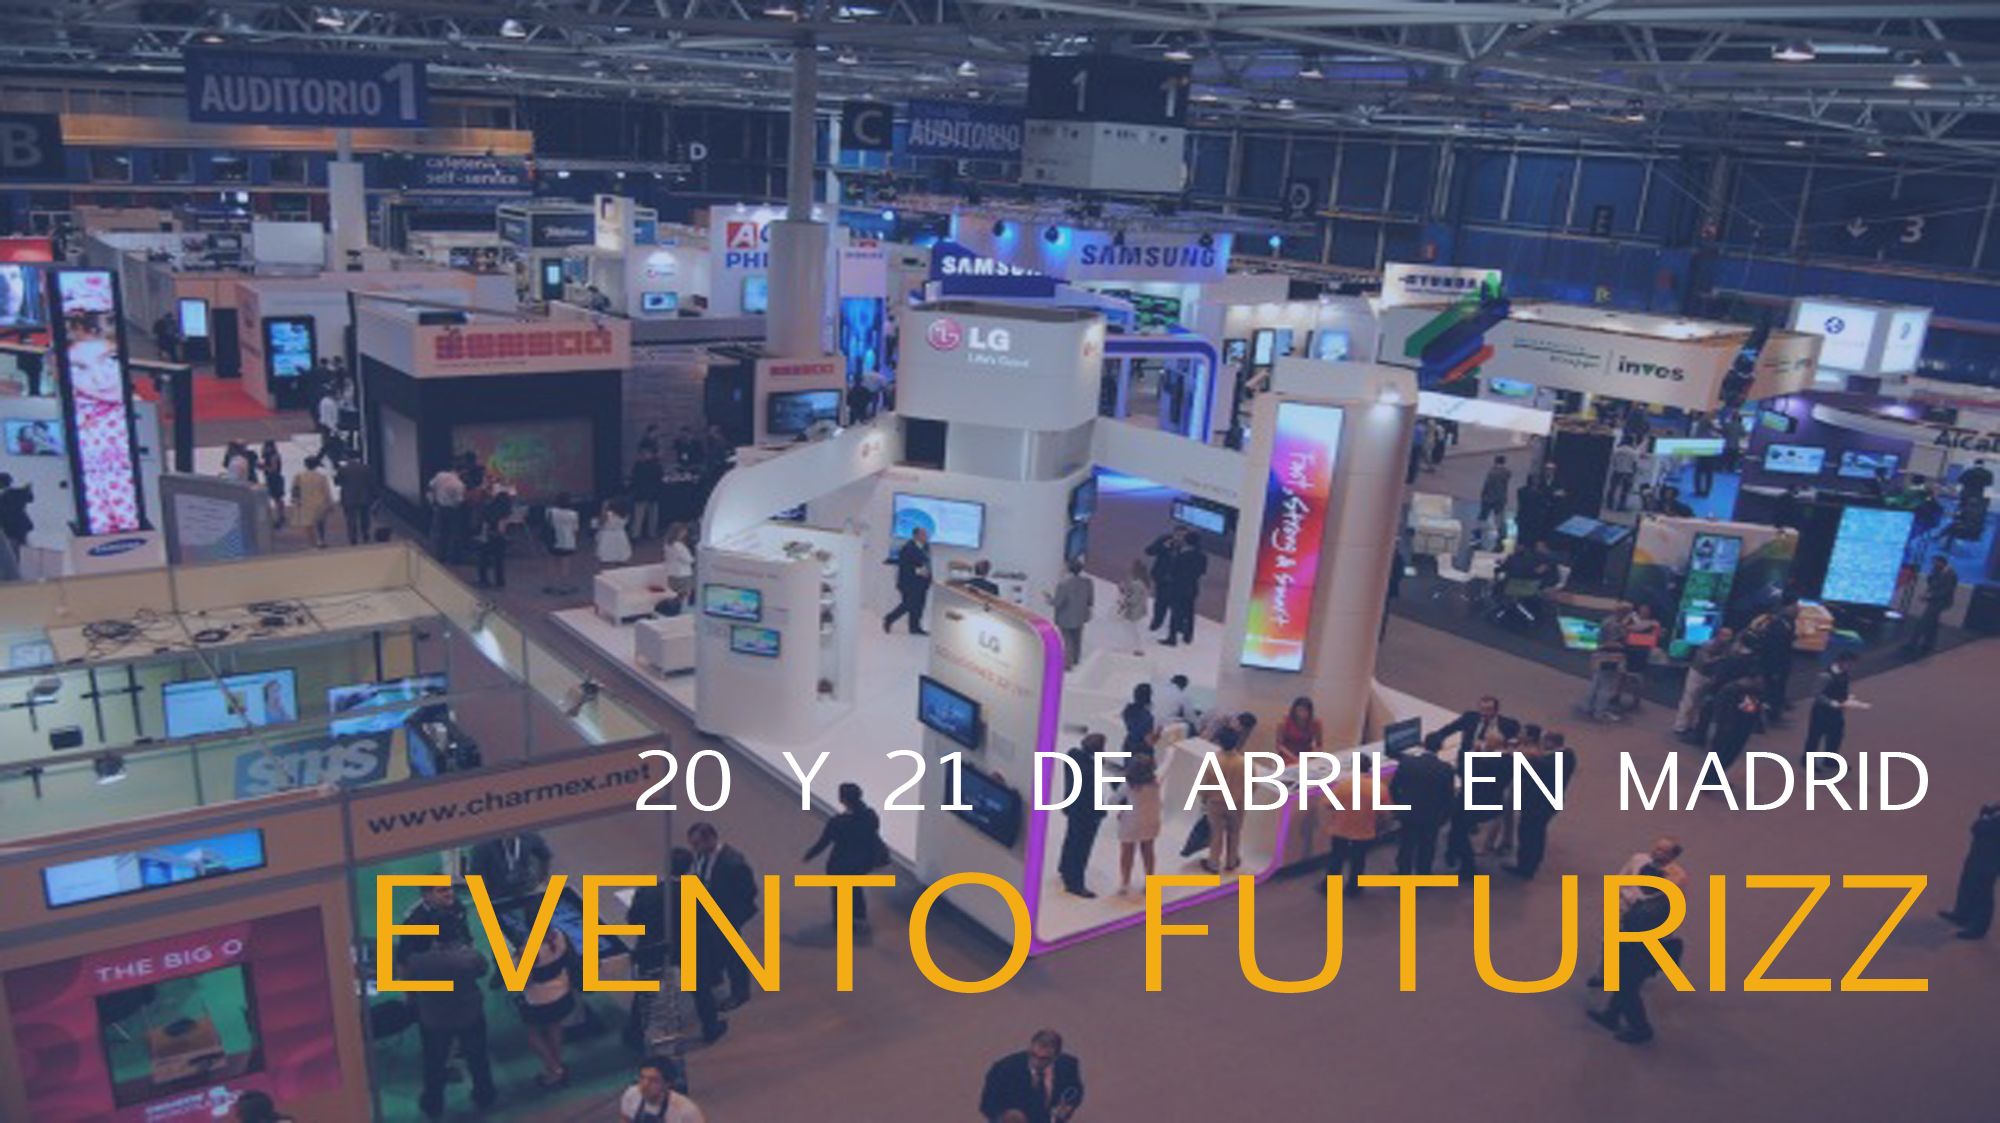 El evento futurizz se celebrará el 20 y 21 de abril en Madrid